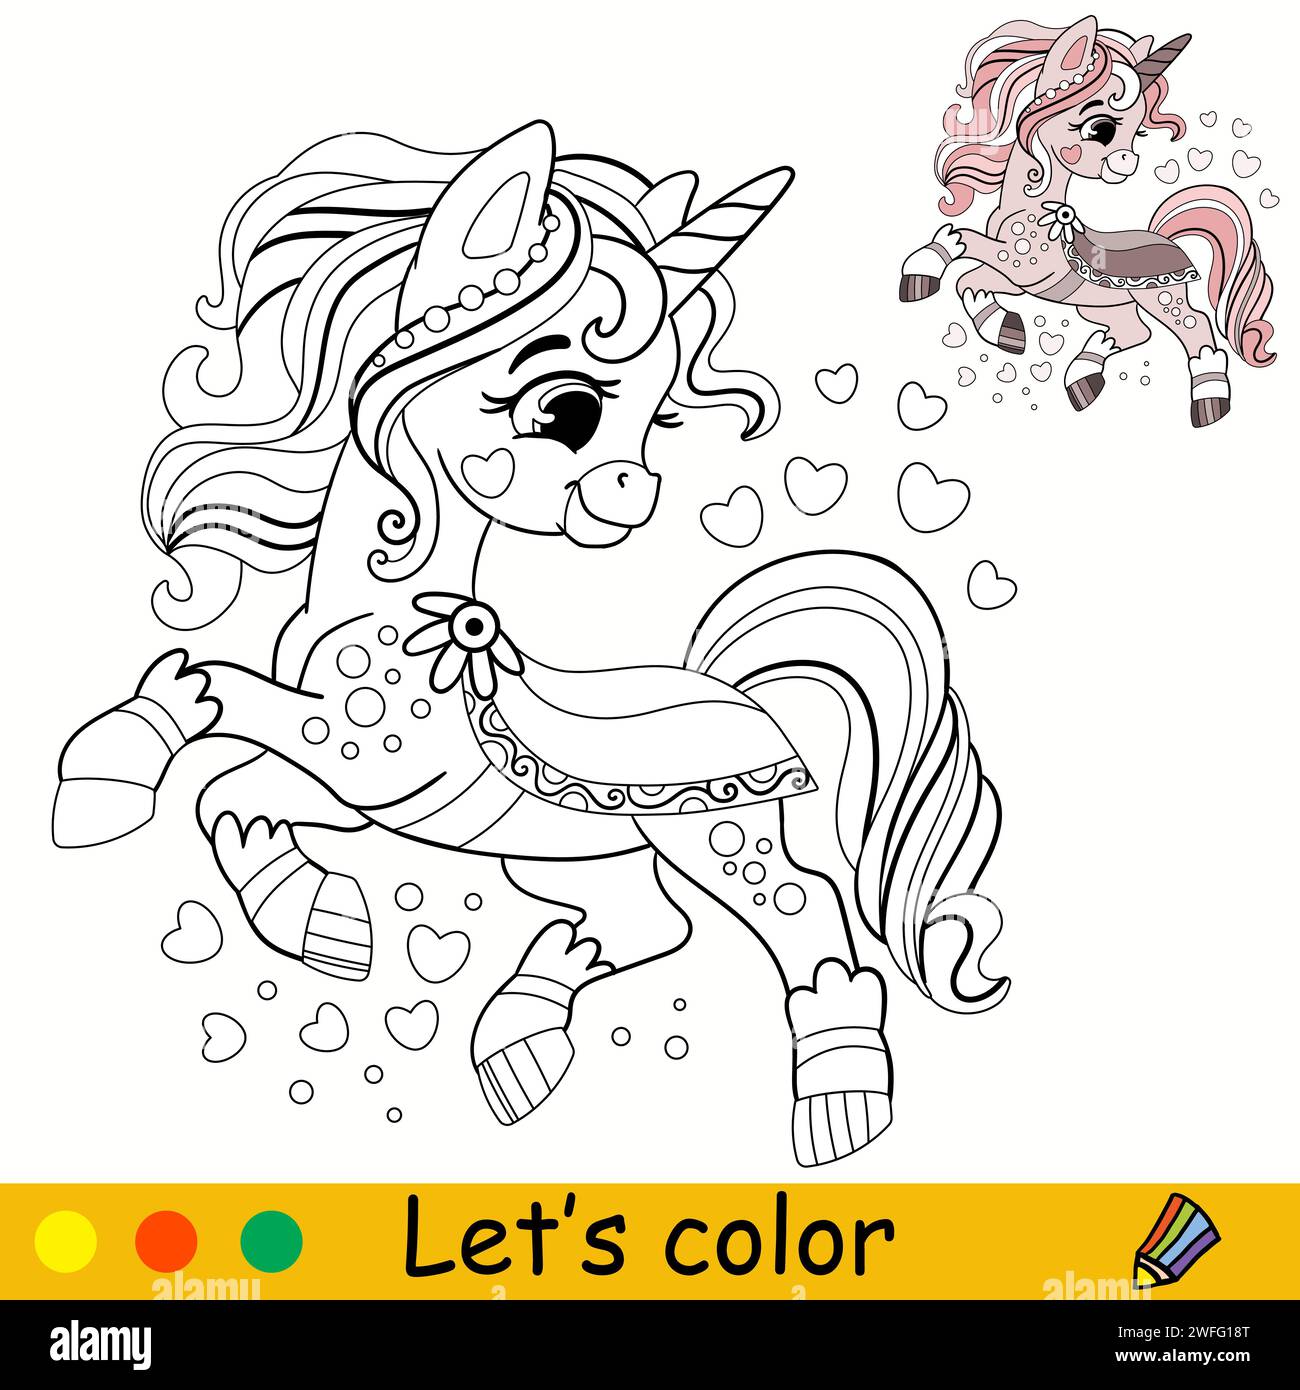 Cartoni animati, simpatico unicorno magico. Pagina di libri da colorare per bambini. Unicorn. Contorno nero su sfondo bianco. Illustrazione vettoriale isolata con colorfu Illustrazione Vettoriale